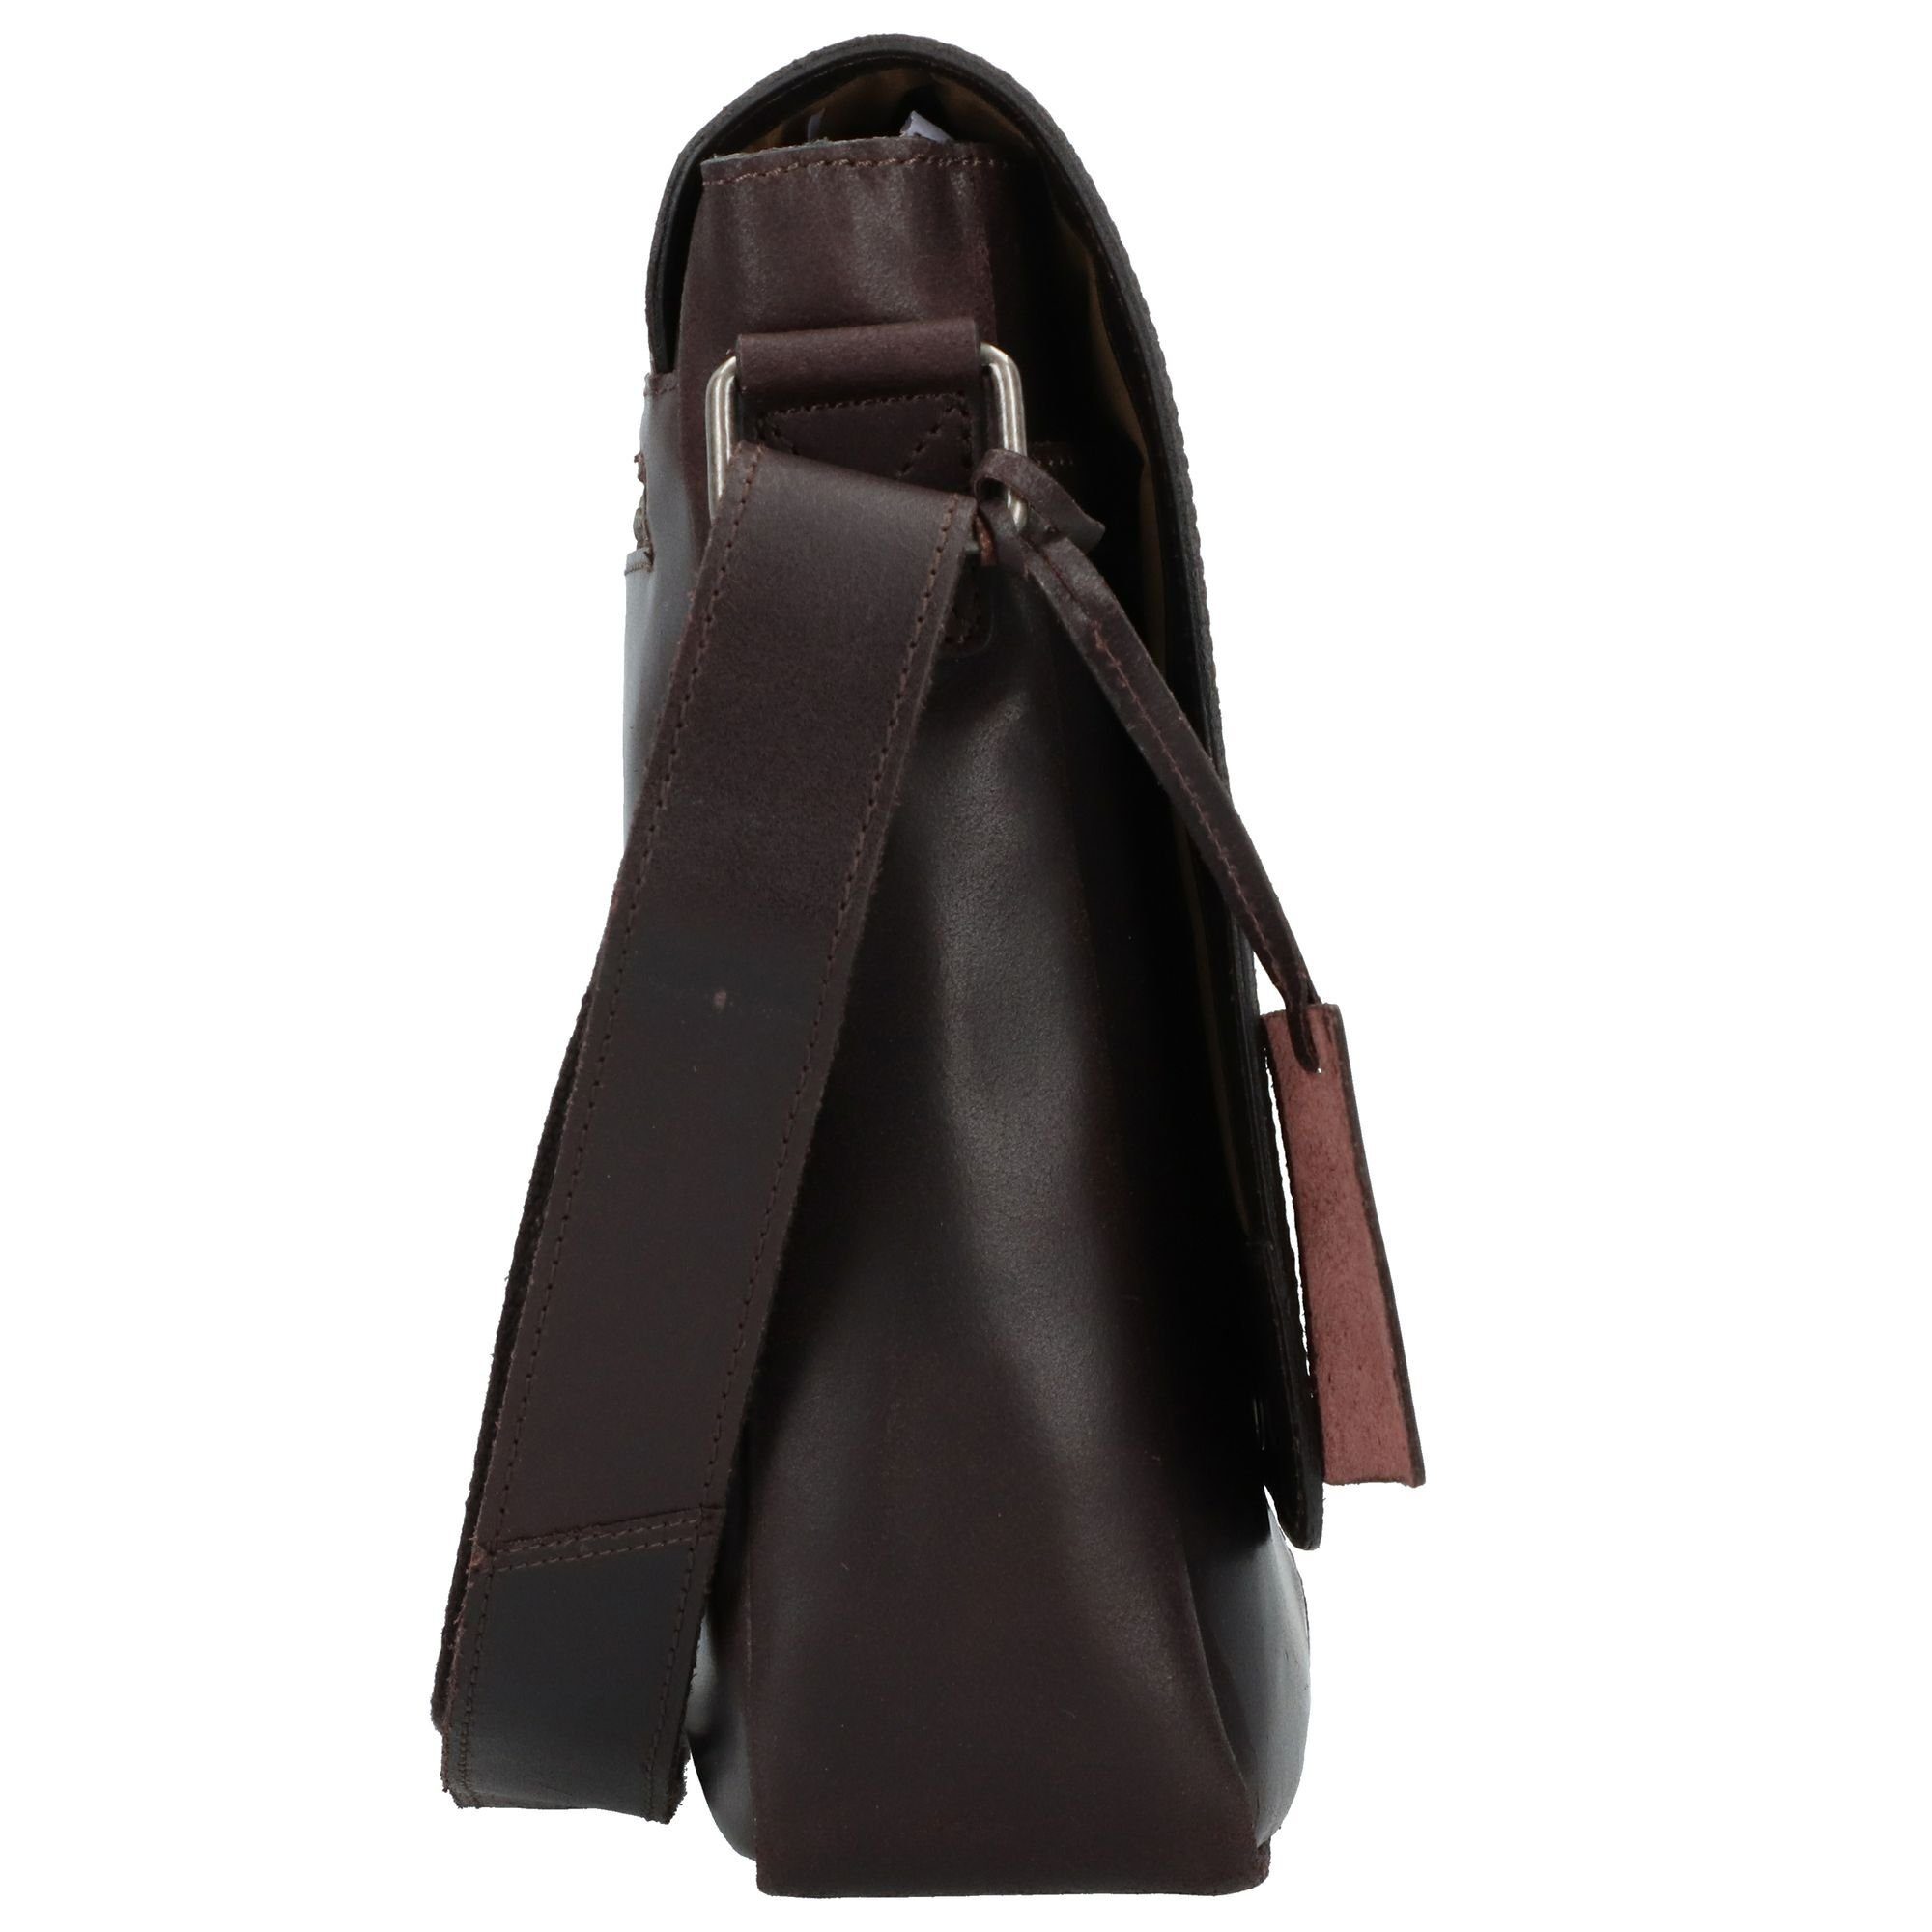 Burkley Burkely Messenger Vintage, brown Leder Bag